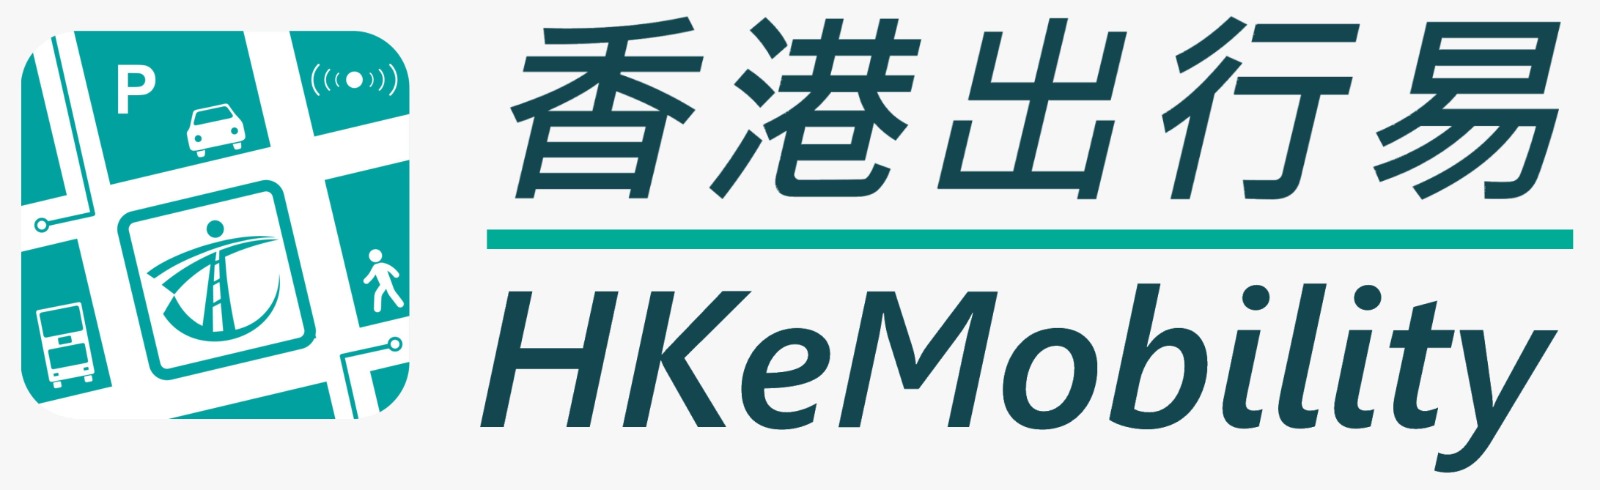 HKeMobility